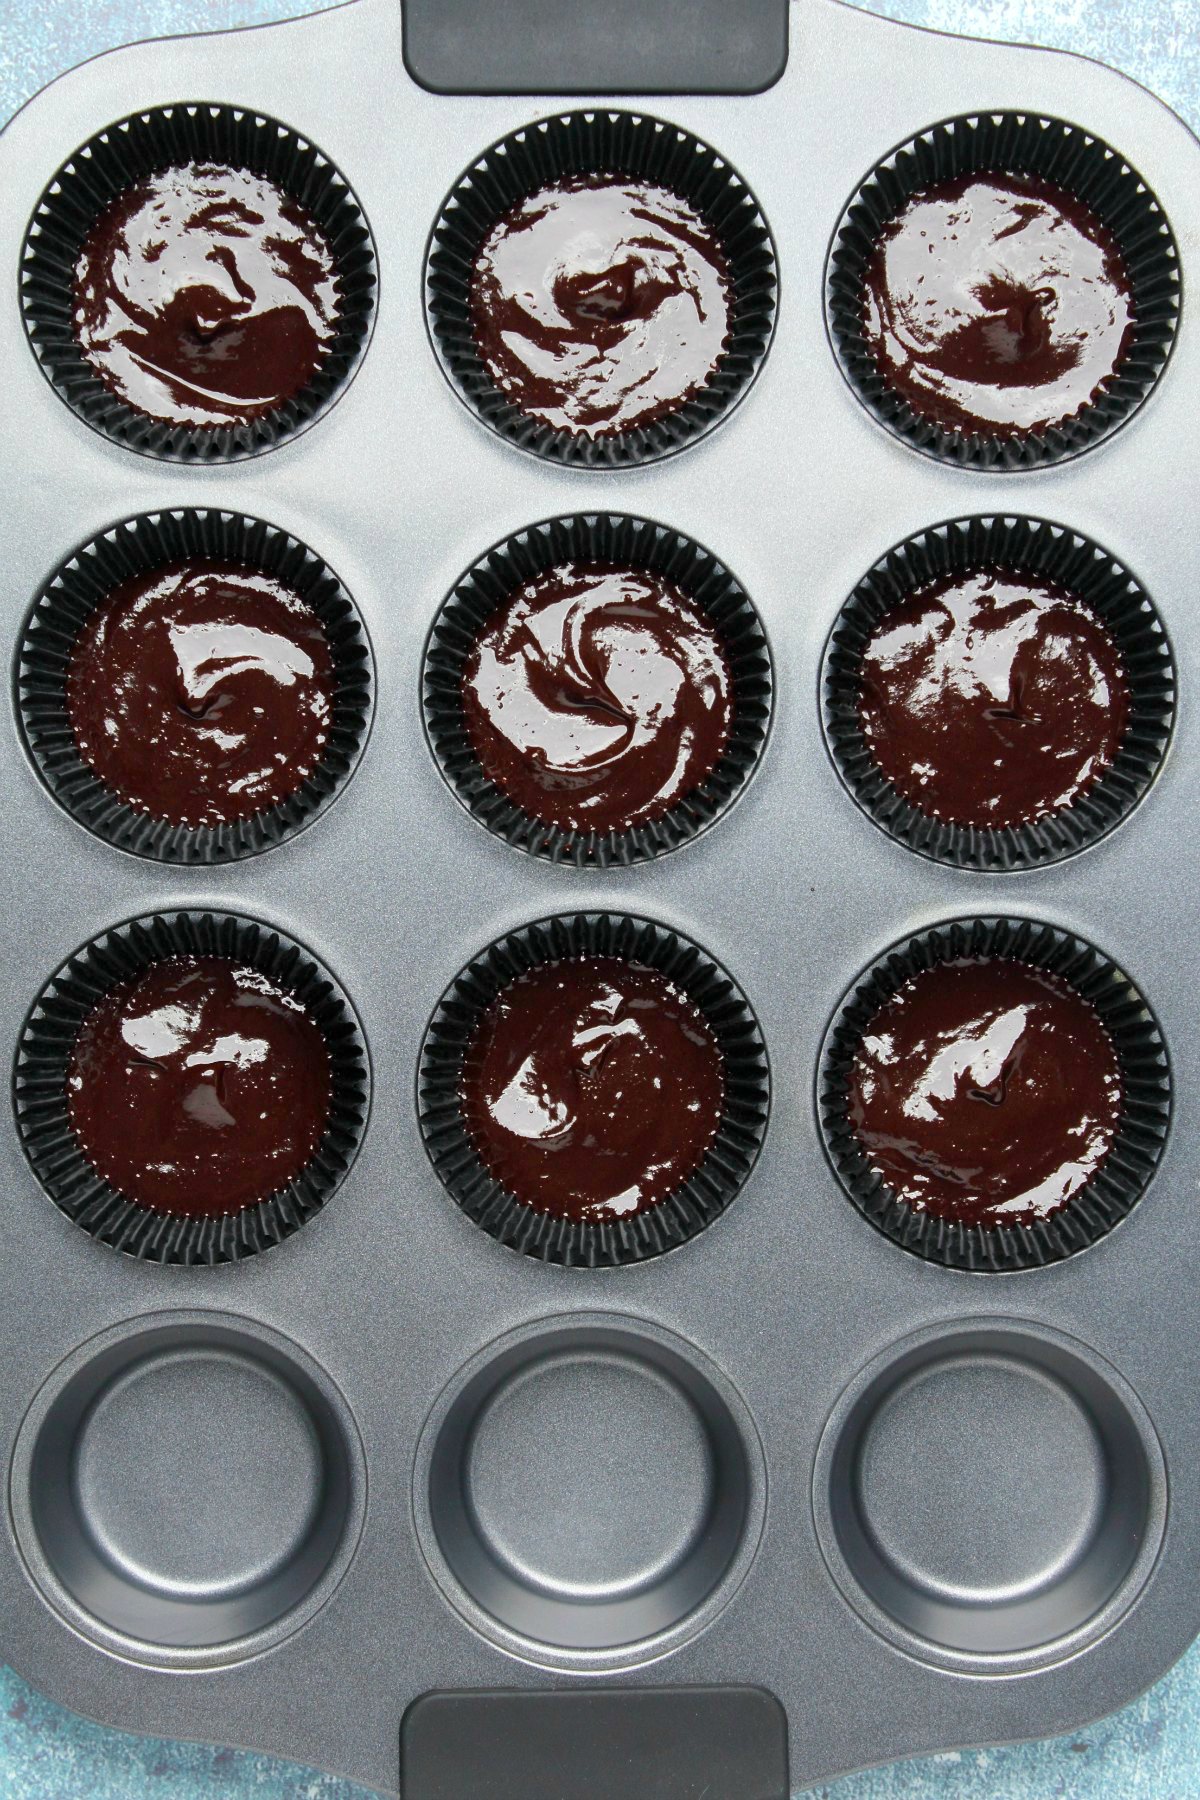 Homemade vegan chocolate in cupcake liners.